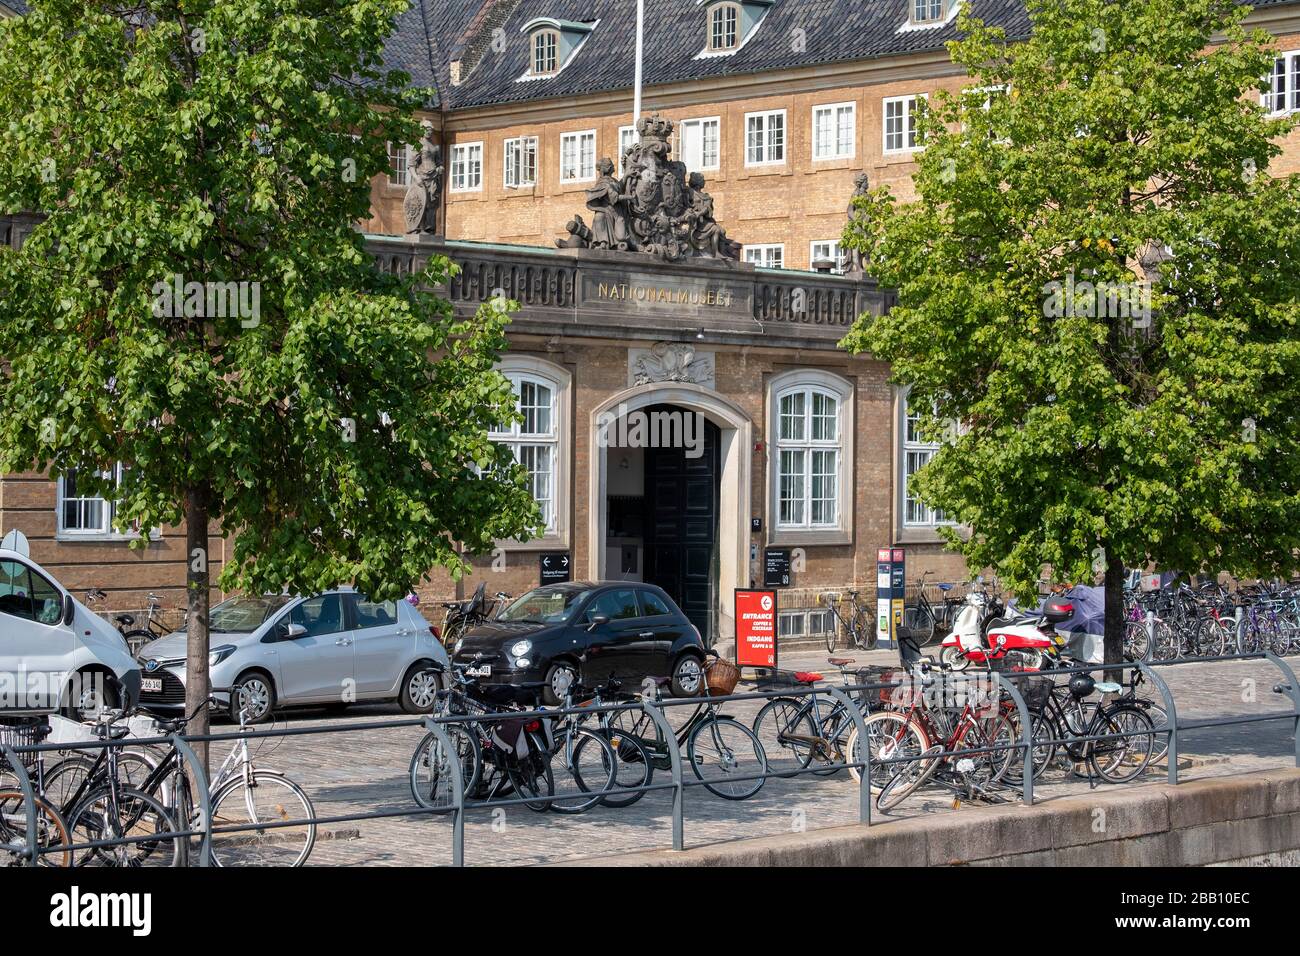 National Museum of Denmark aka Nationalmuseet in Copenhagen, Denmark, Europe Stock Photo